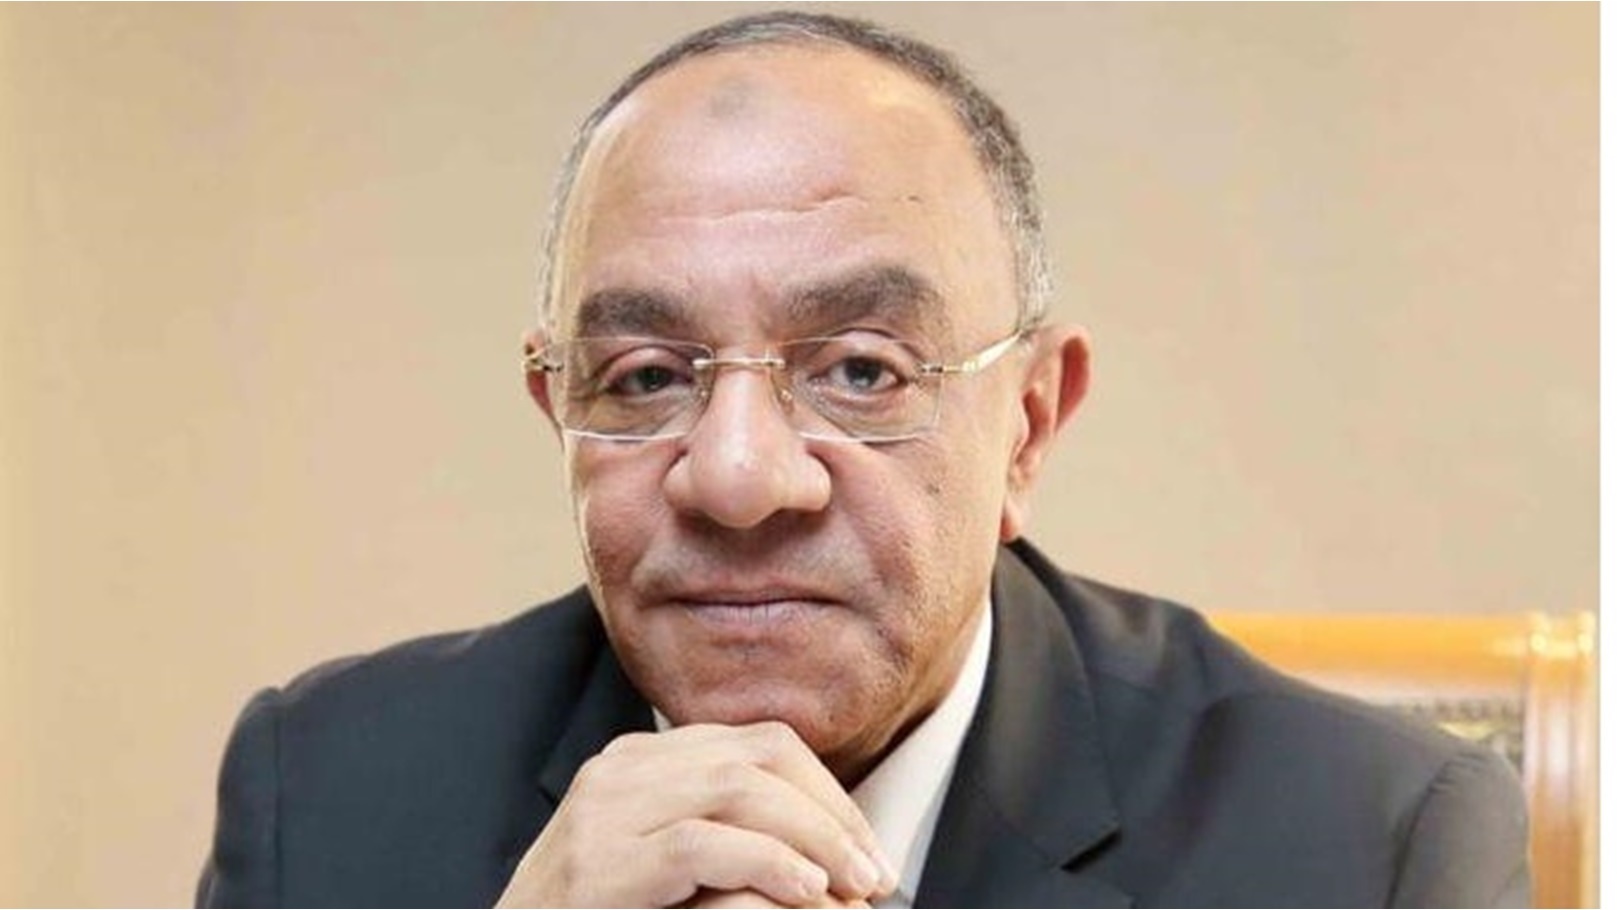 عادل ناصر رئيس مجلس إدارة الغرفة التجارية بالجيزة